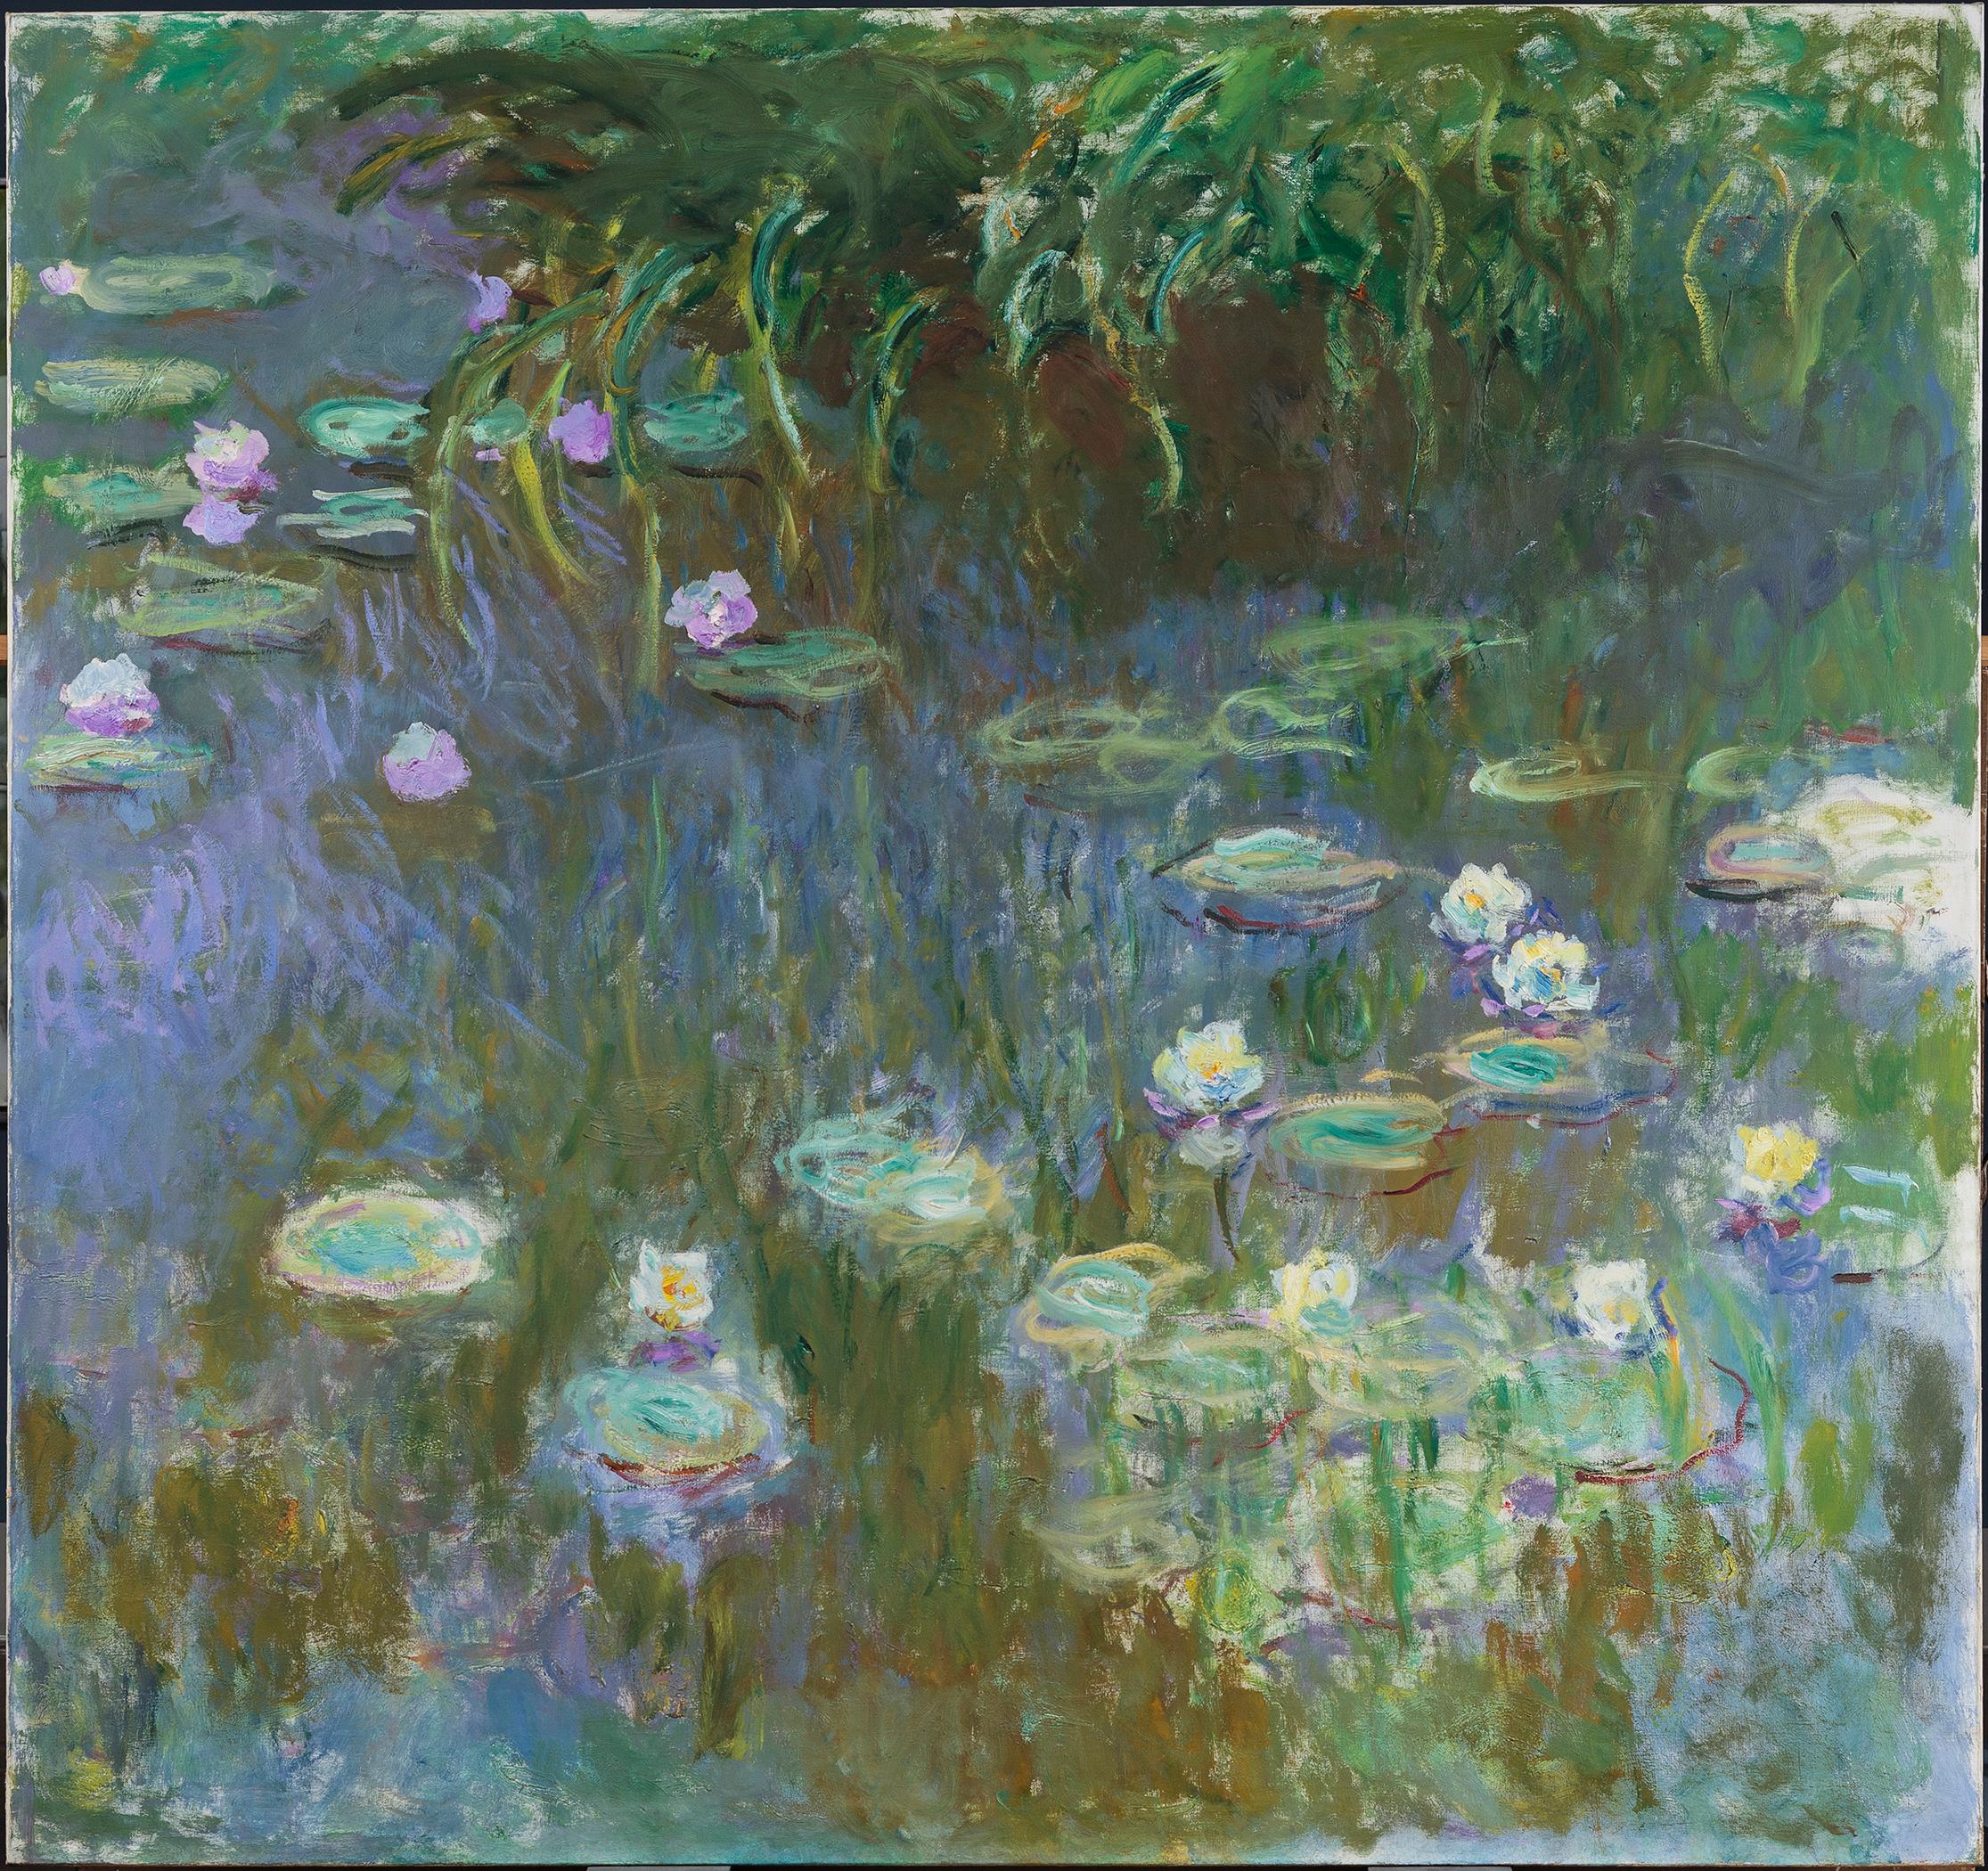 睡蓮 by Claude Monet - 1922年 - 213.3 x 200 cm 